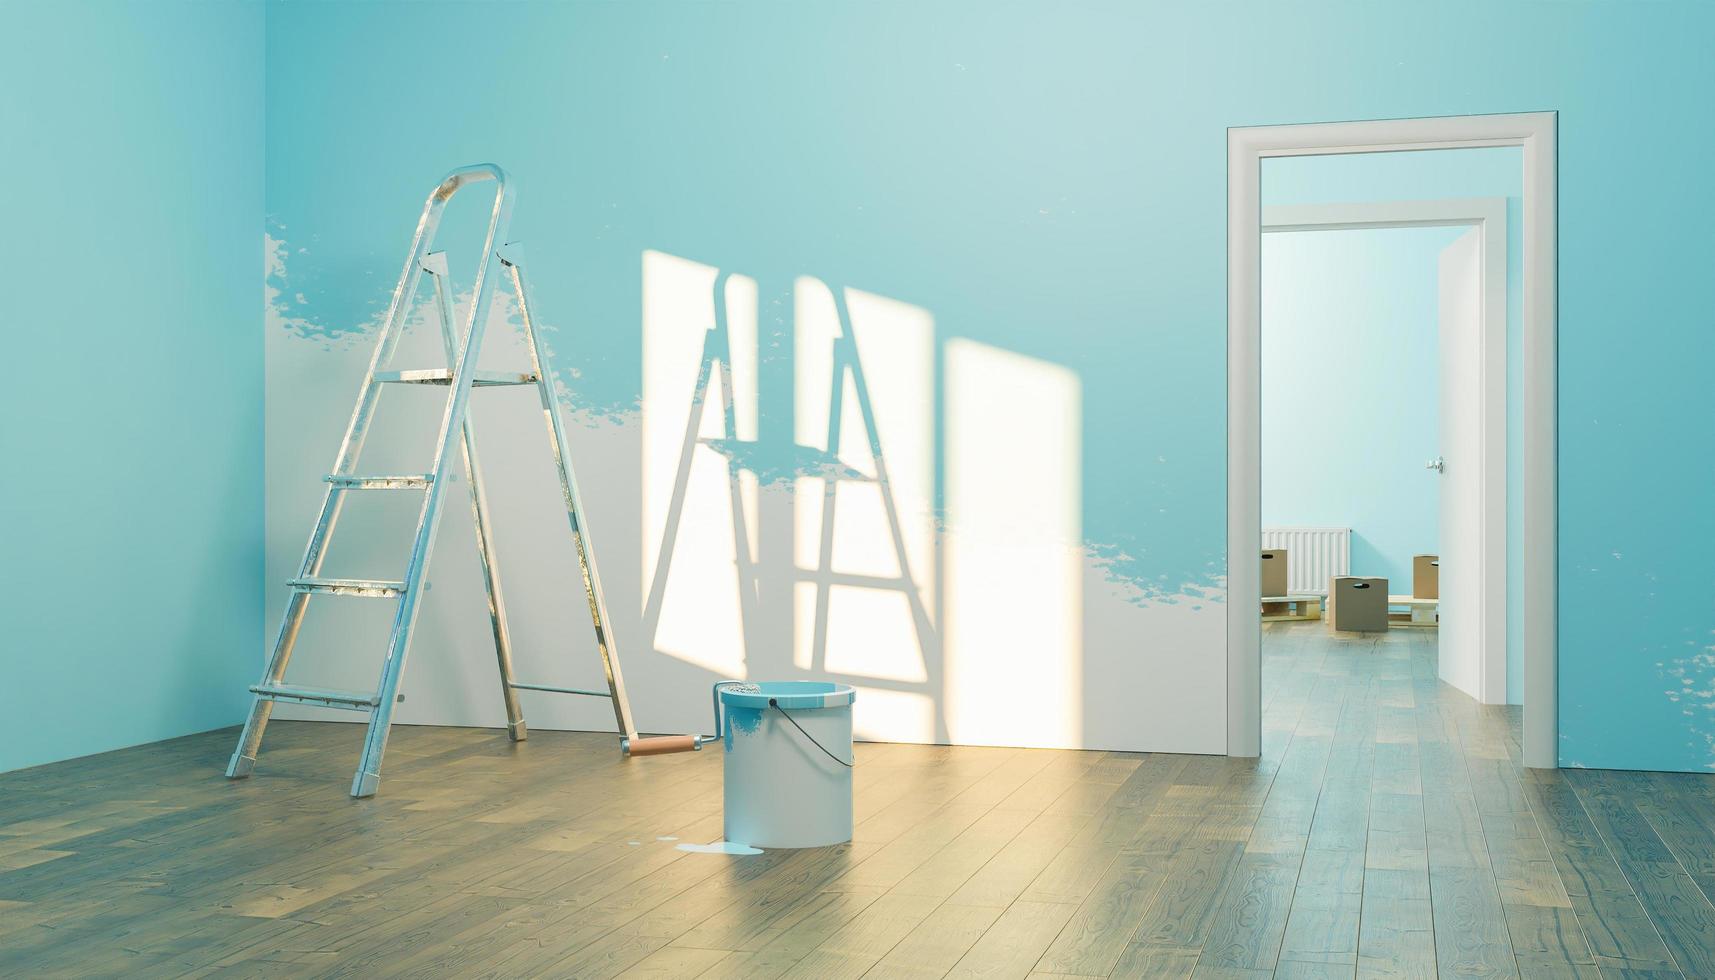 interiör i ett nytt hus med färgburk och halvmålad vägg foto